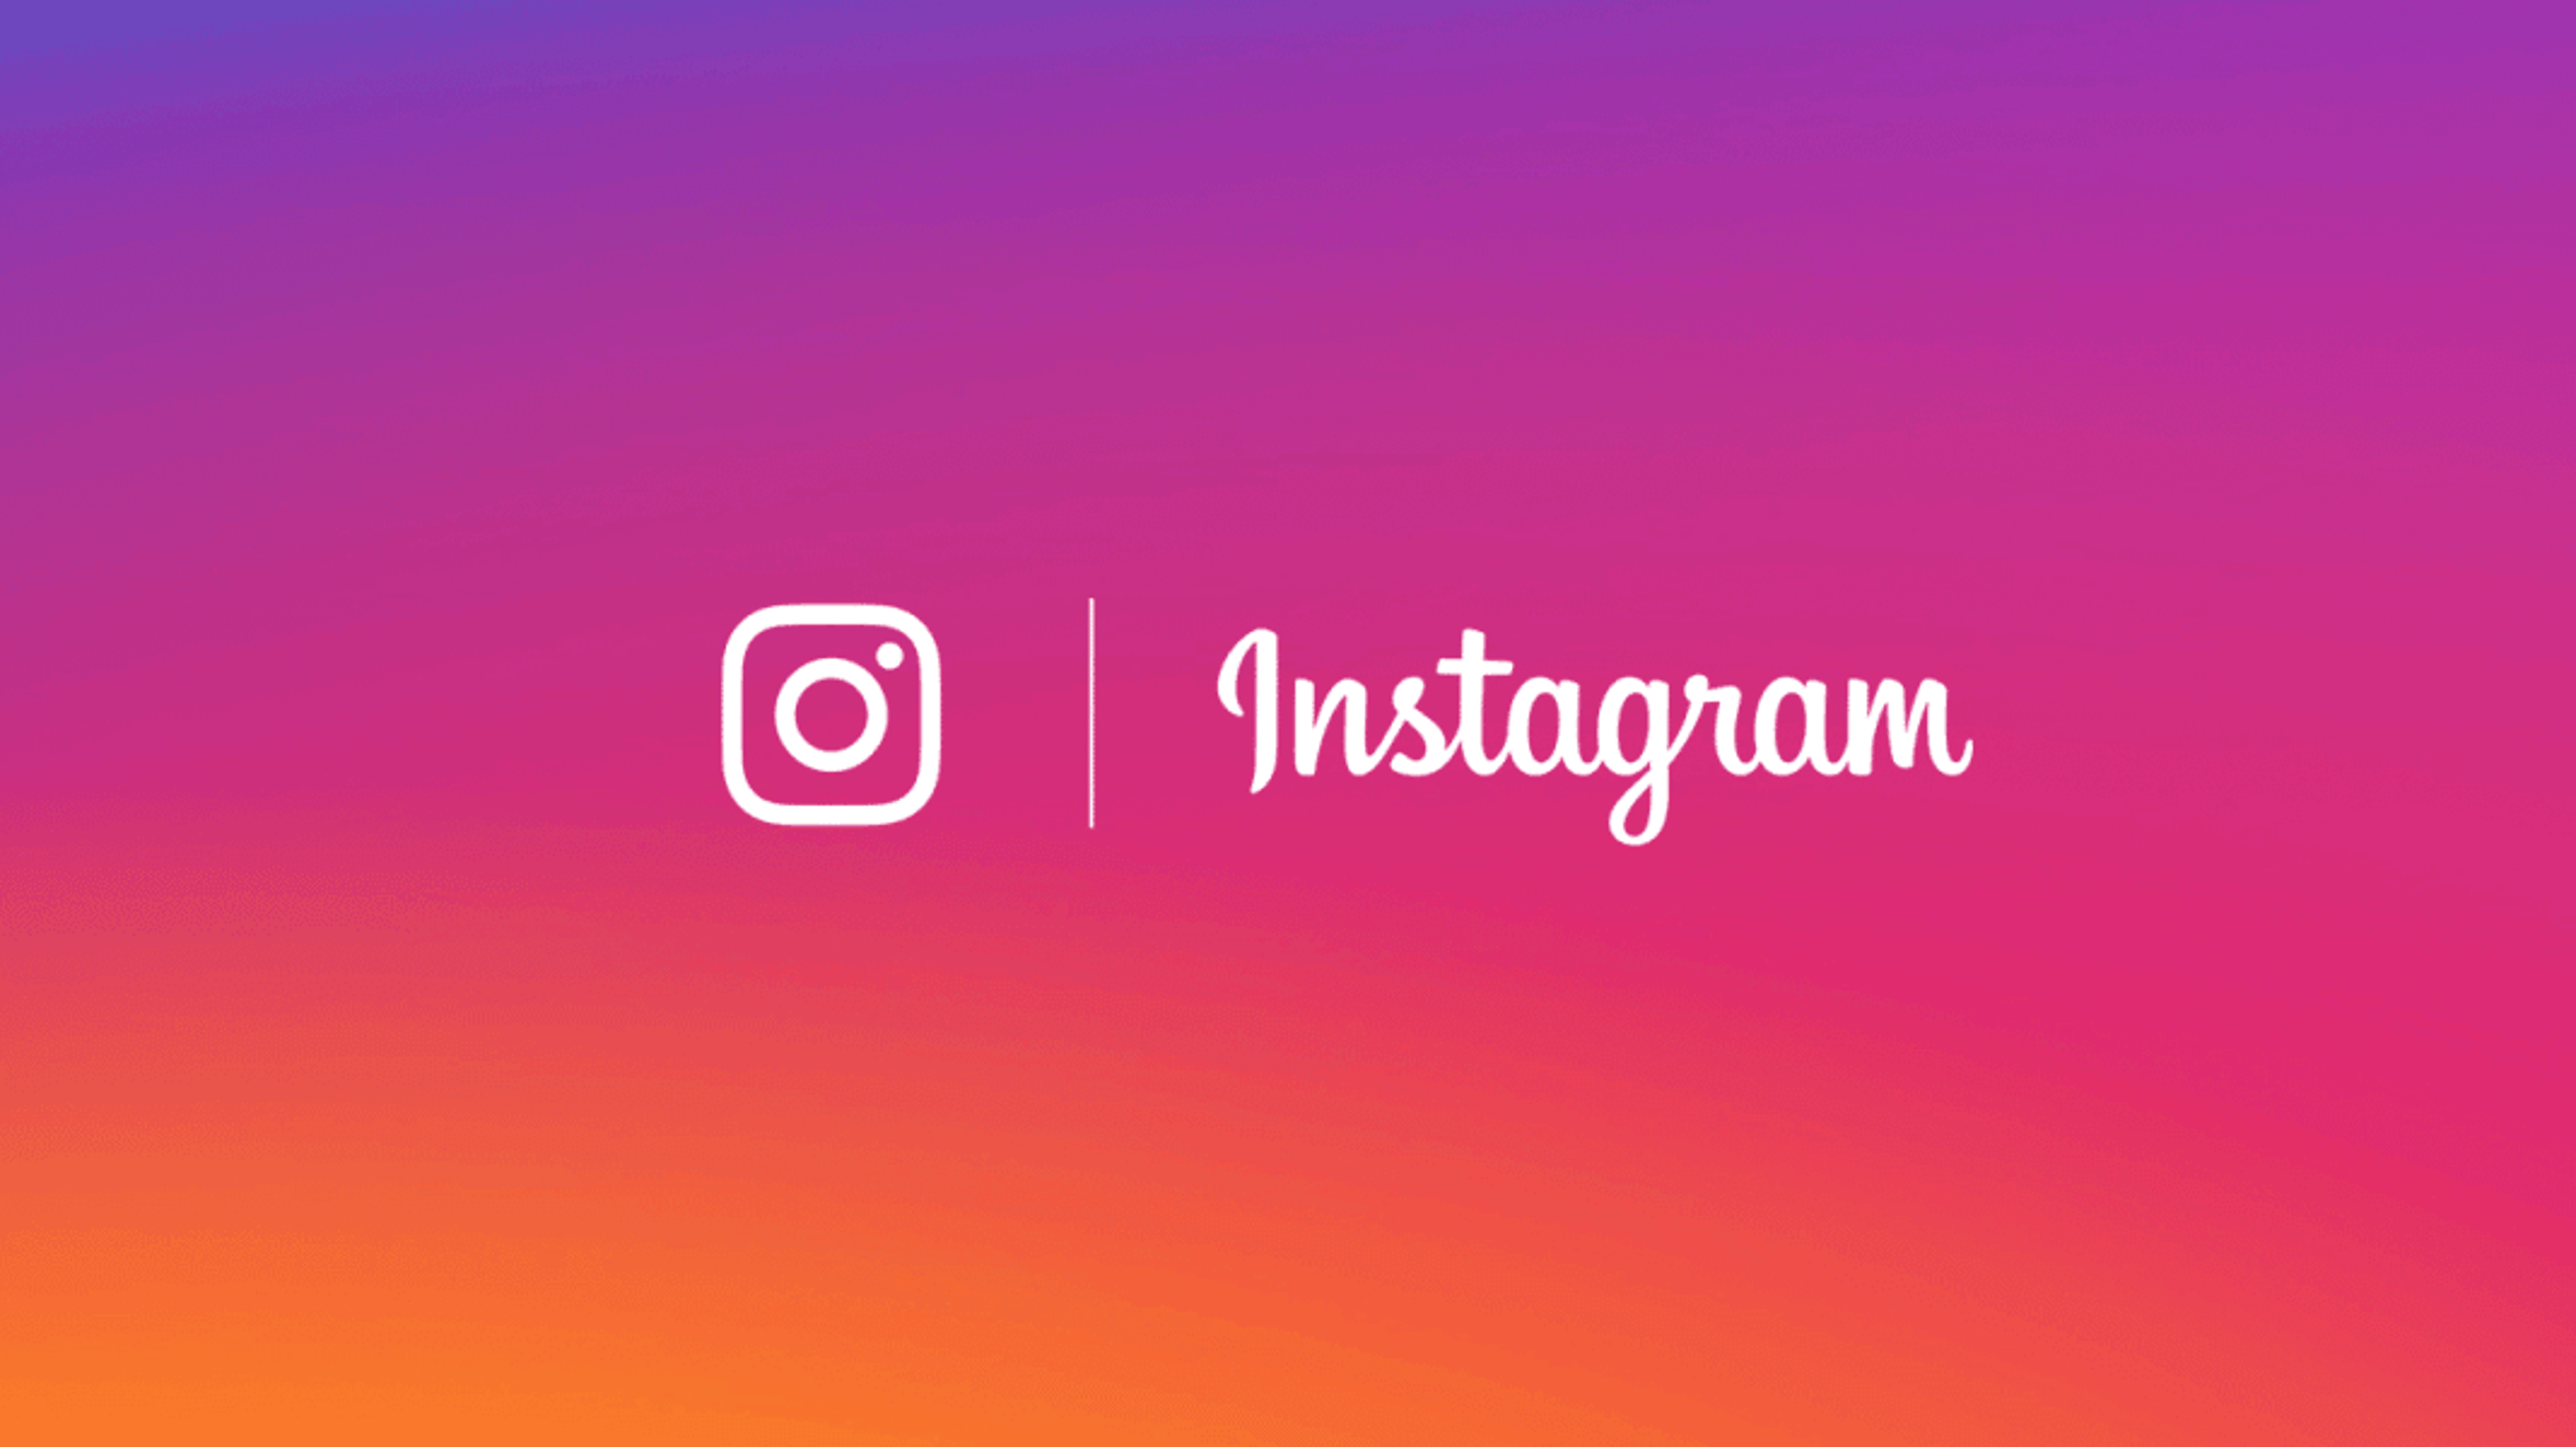 Instagram: account innocenti bannati oggi 31 ottobre 2022 Cover